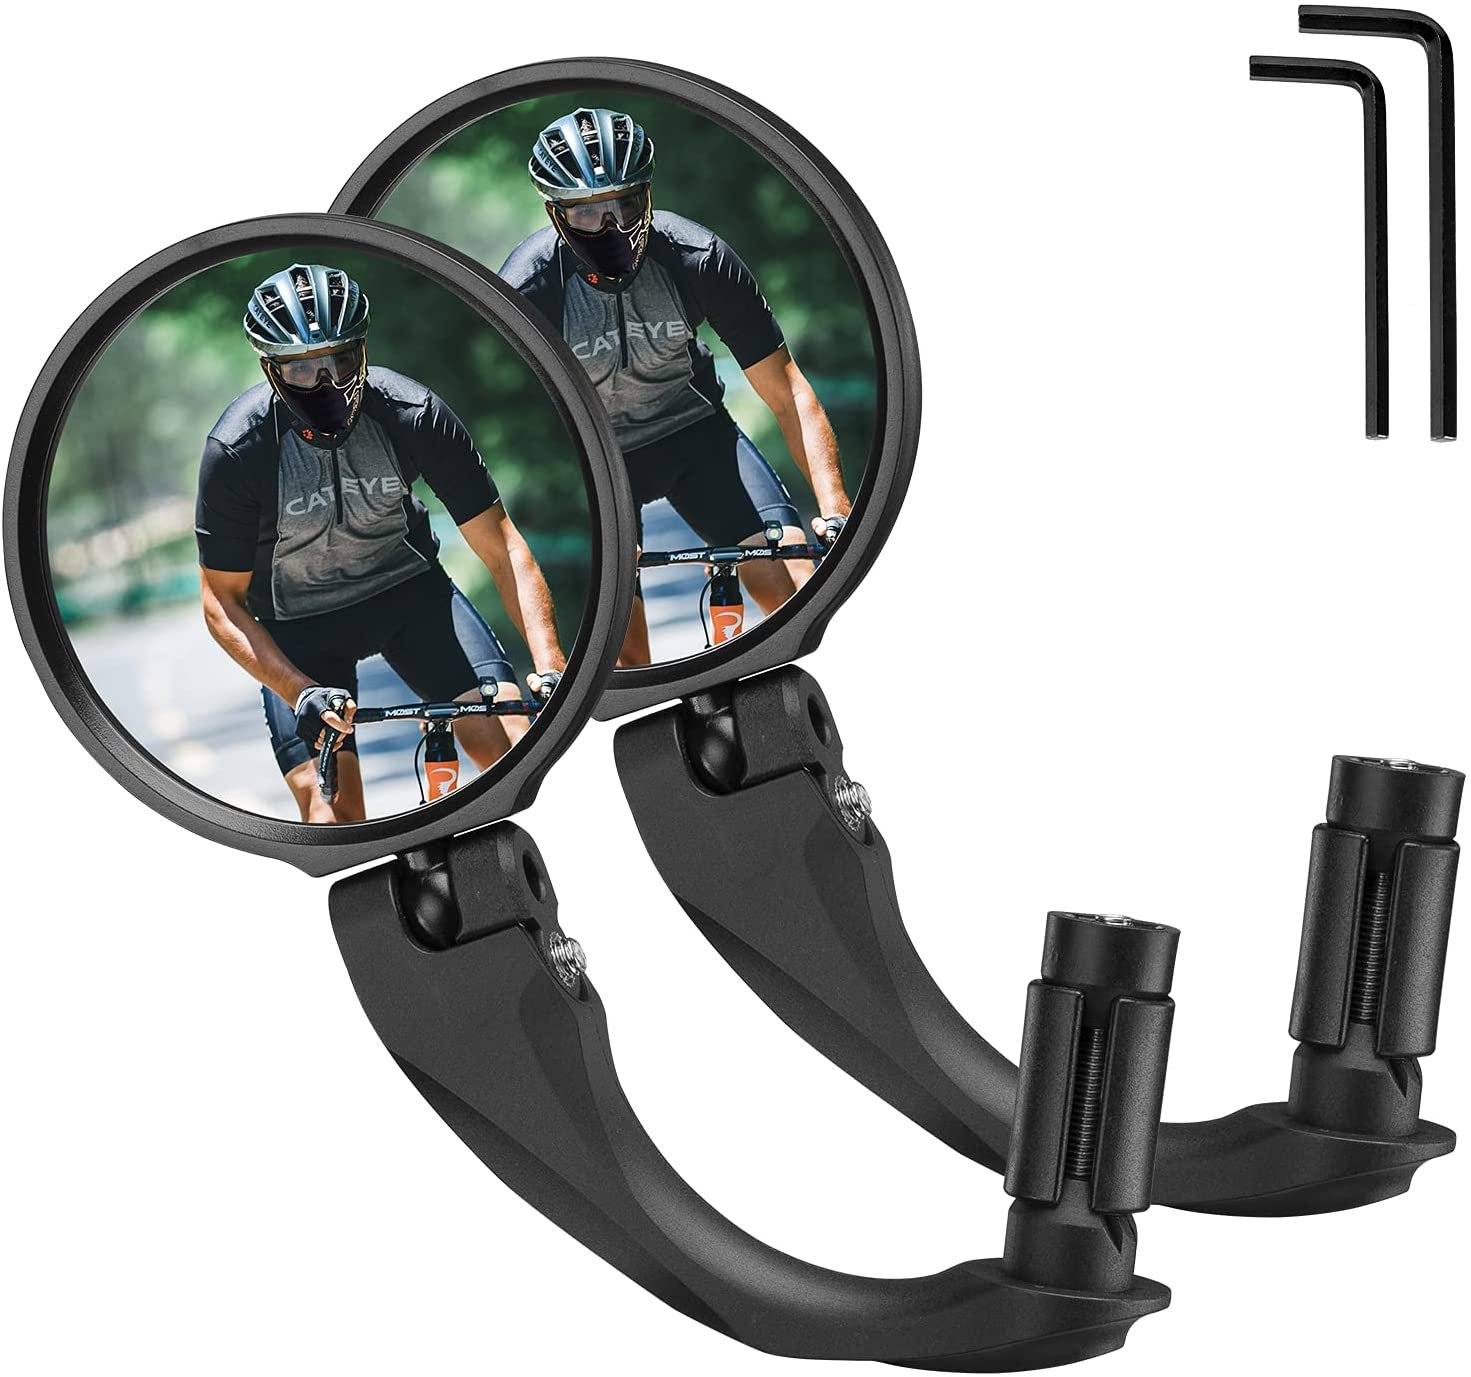 Зеркало велосипедное RockBros, акриловое, заднего вида, круглое 7,5 см, длина ручки 9 см, черный, FK-272 maxi cosi зеркало заднего вида